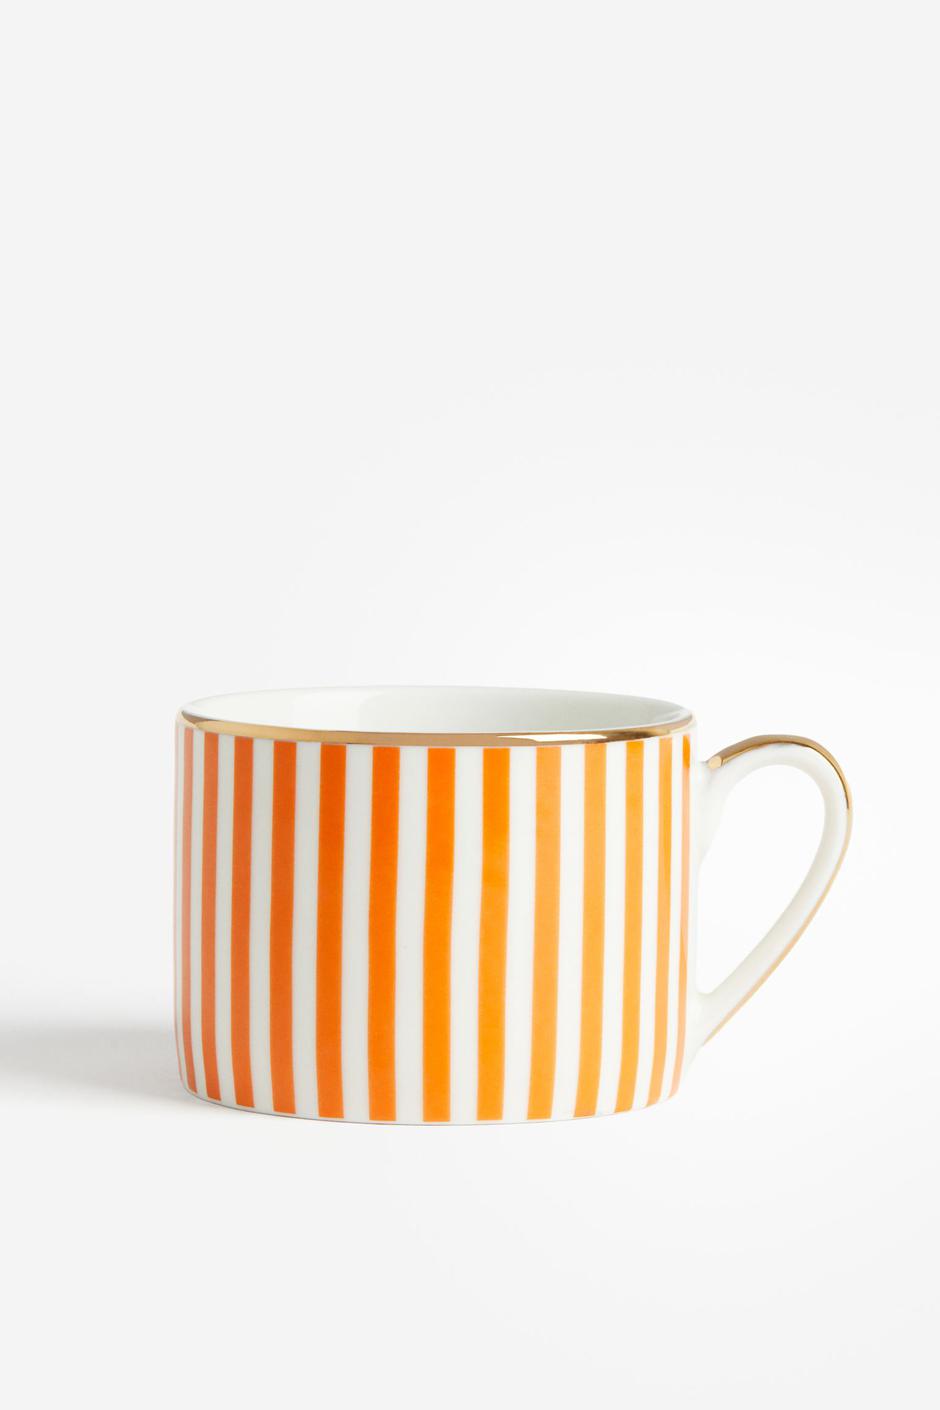 Foto: H&M, narančaste šalice sa zlatnim detaljima | Autor: H&M